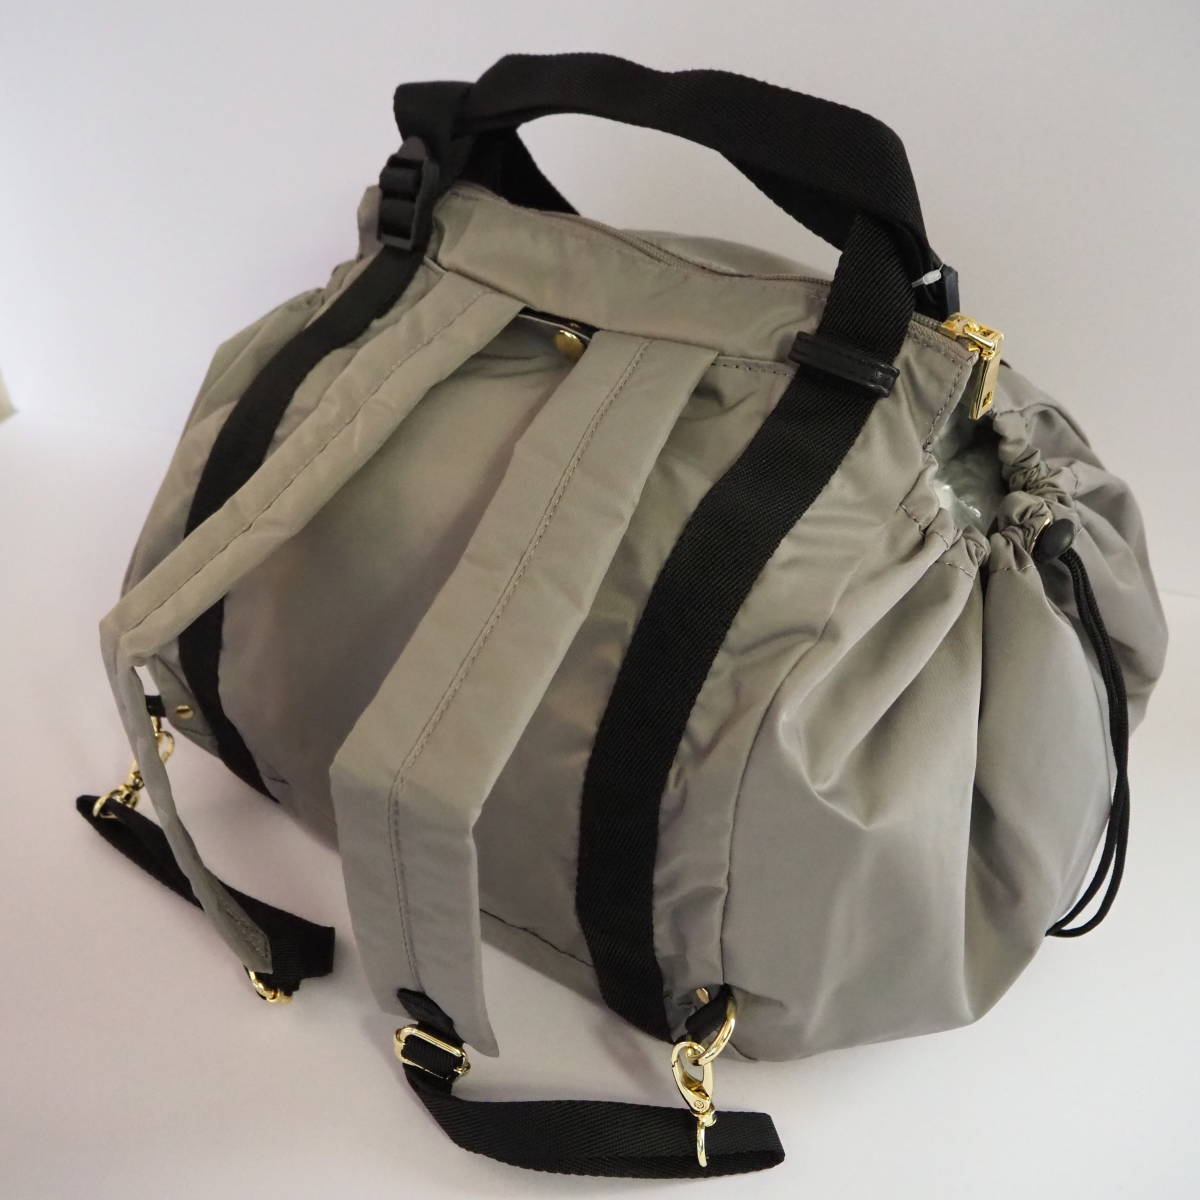  Ferrie simo* new goods 3 color set * regular price 12870 jpy reji basket rucksack Basic color all 3 kind eko-bag reji basket bag rucksack 